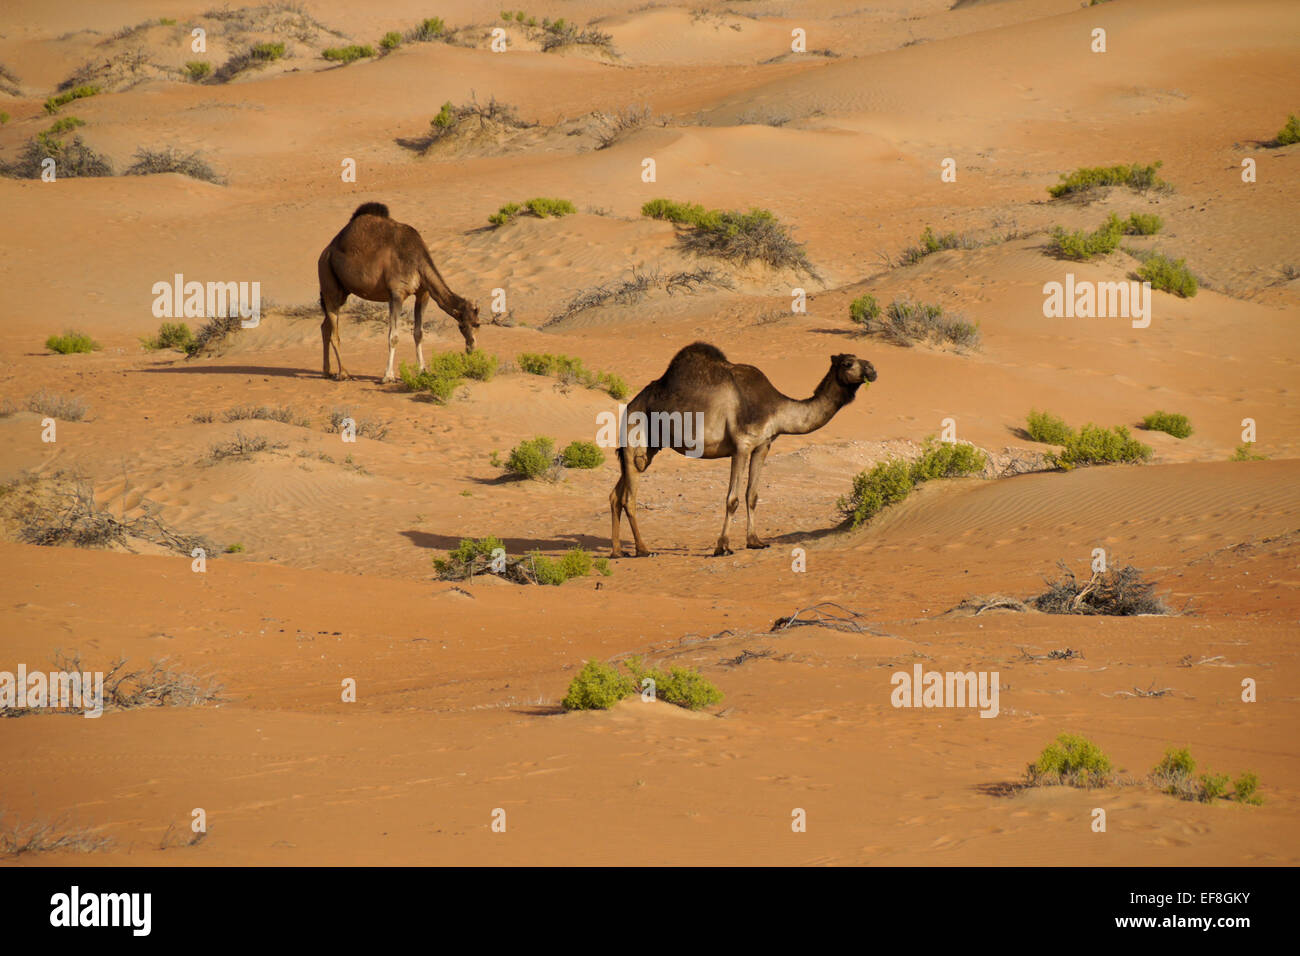 Camels in Liwa sand dunes, Abu Dhabi, United Arab Emirates Stock Photo